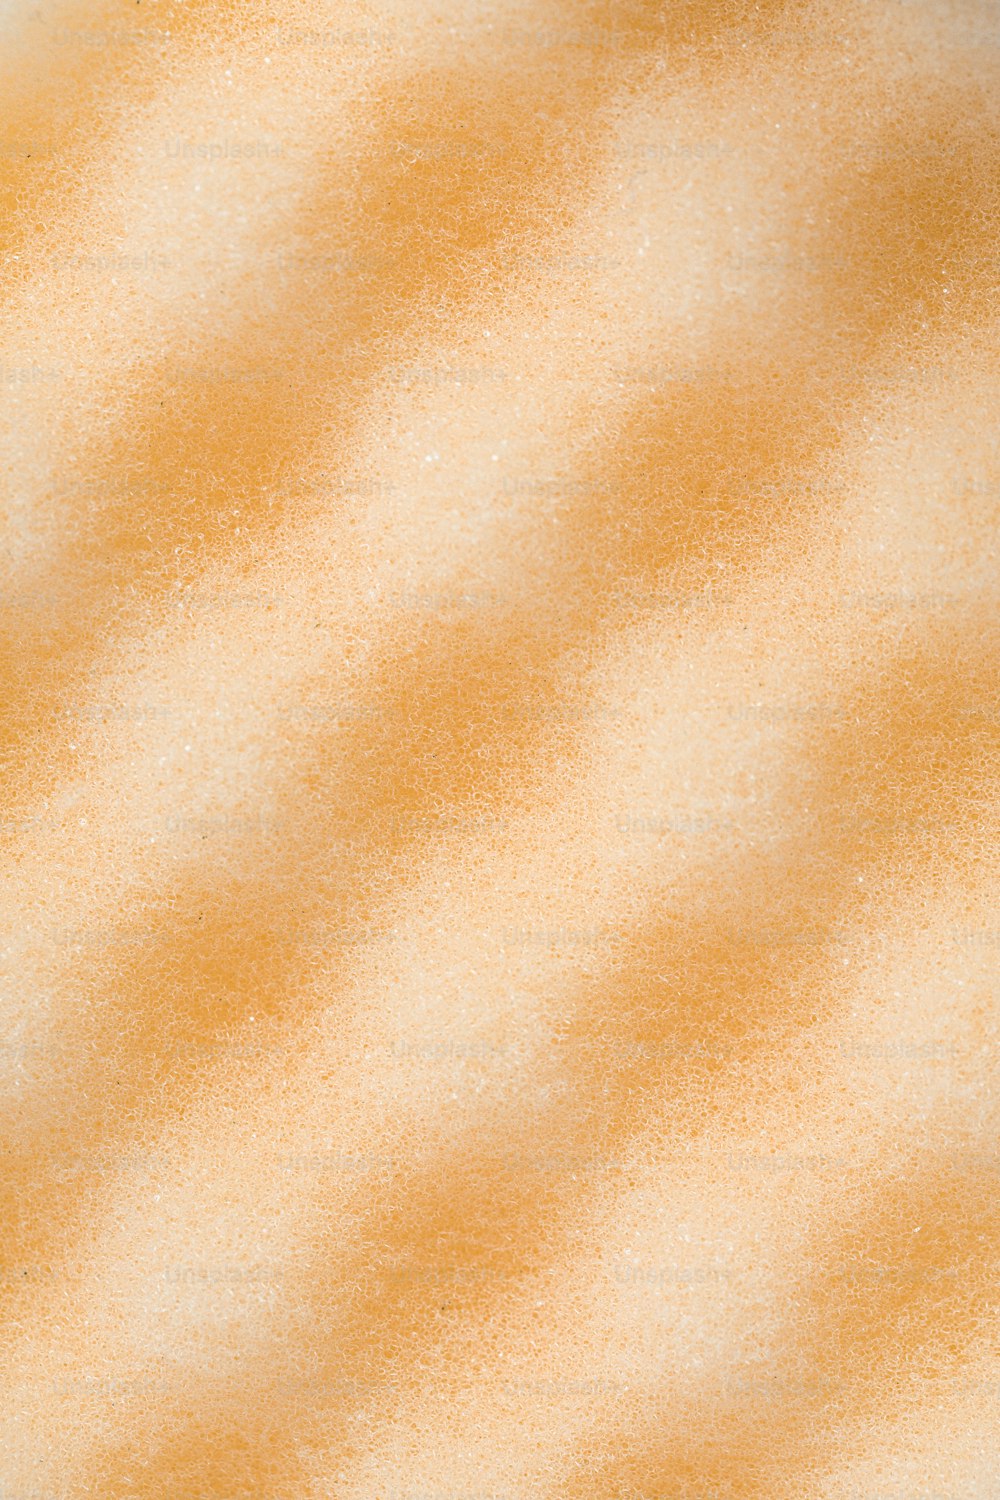 um close up de um fundo laranja e branco